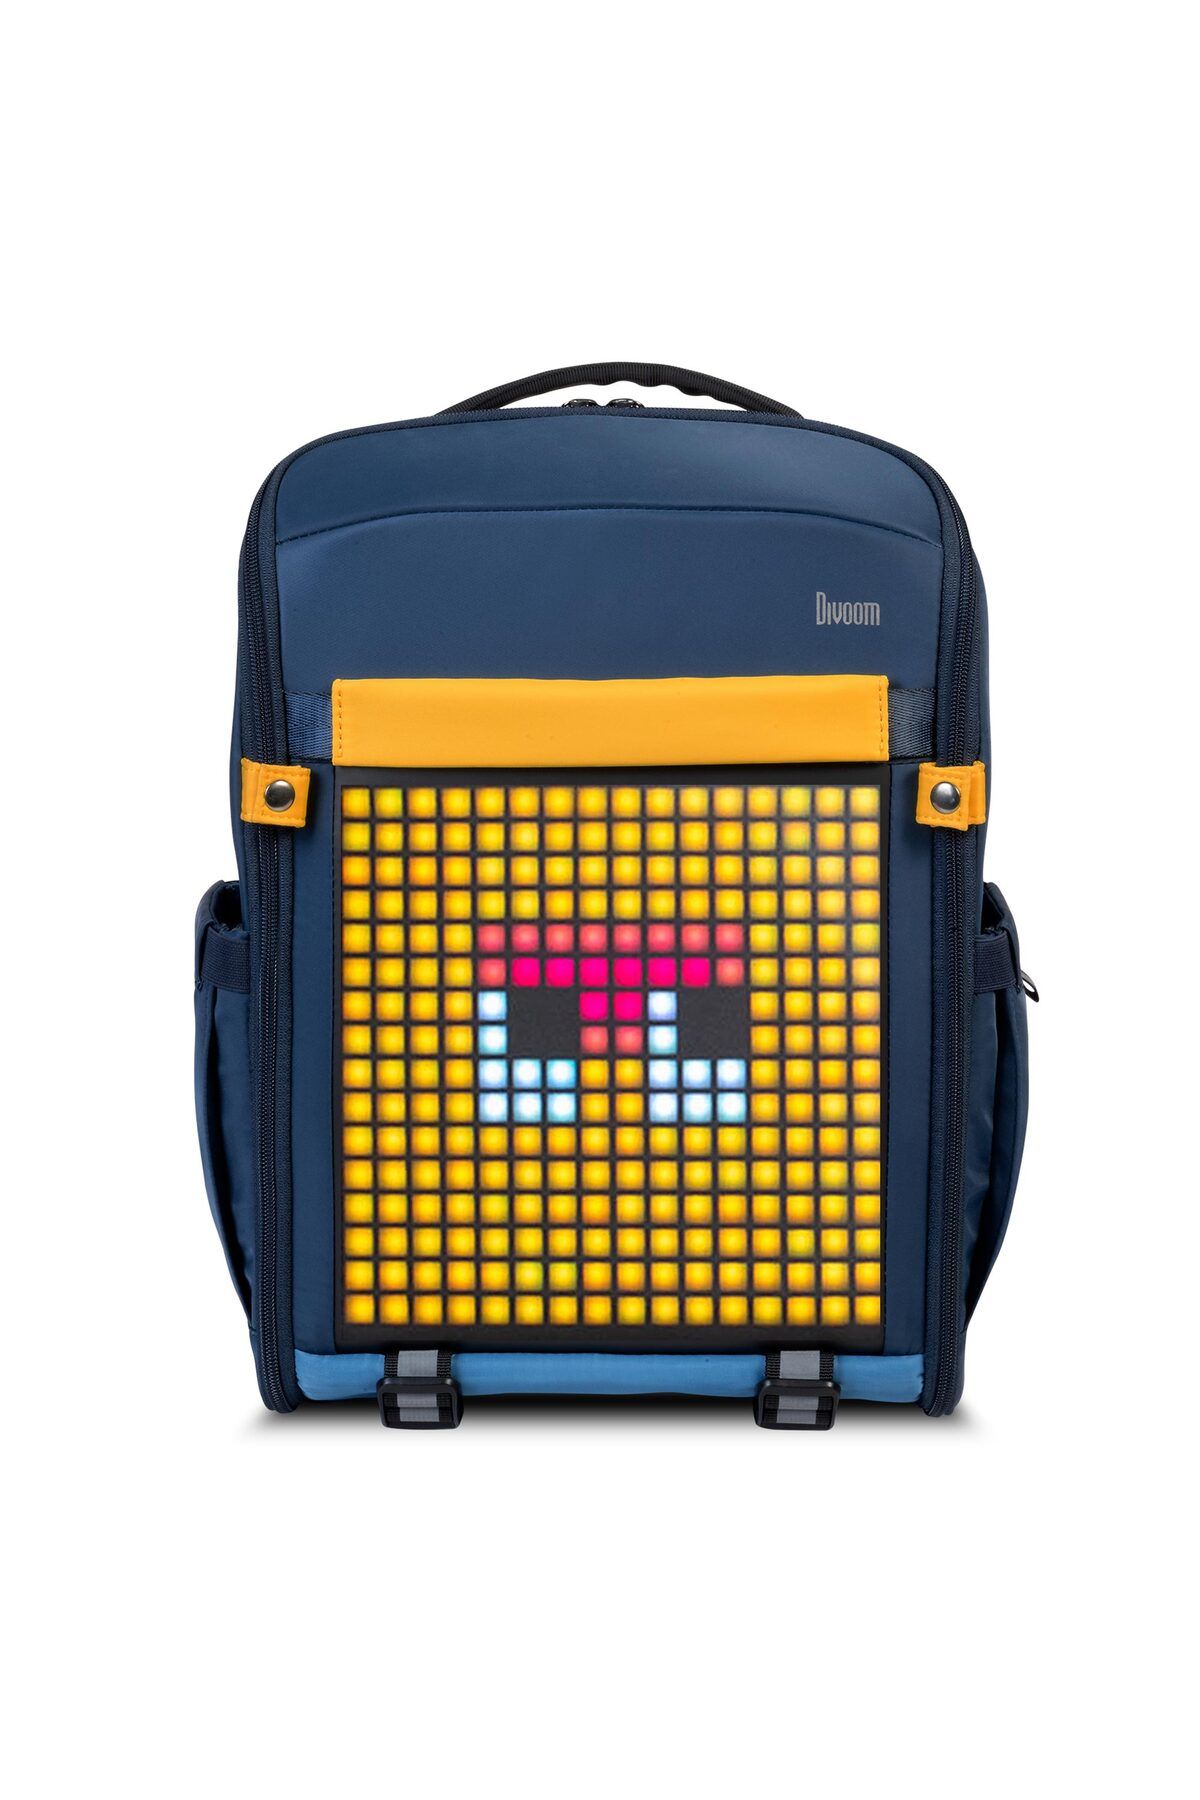 Divoom Backpack S Mavi Ledli Ekran App Kontrollü Akıllı Sırt Çantası